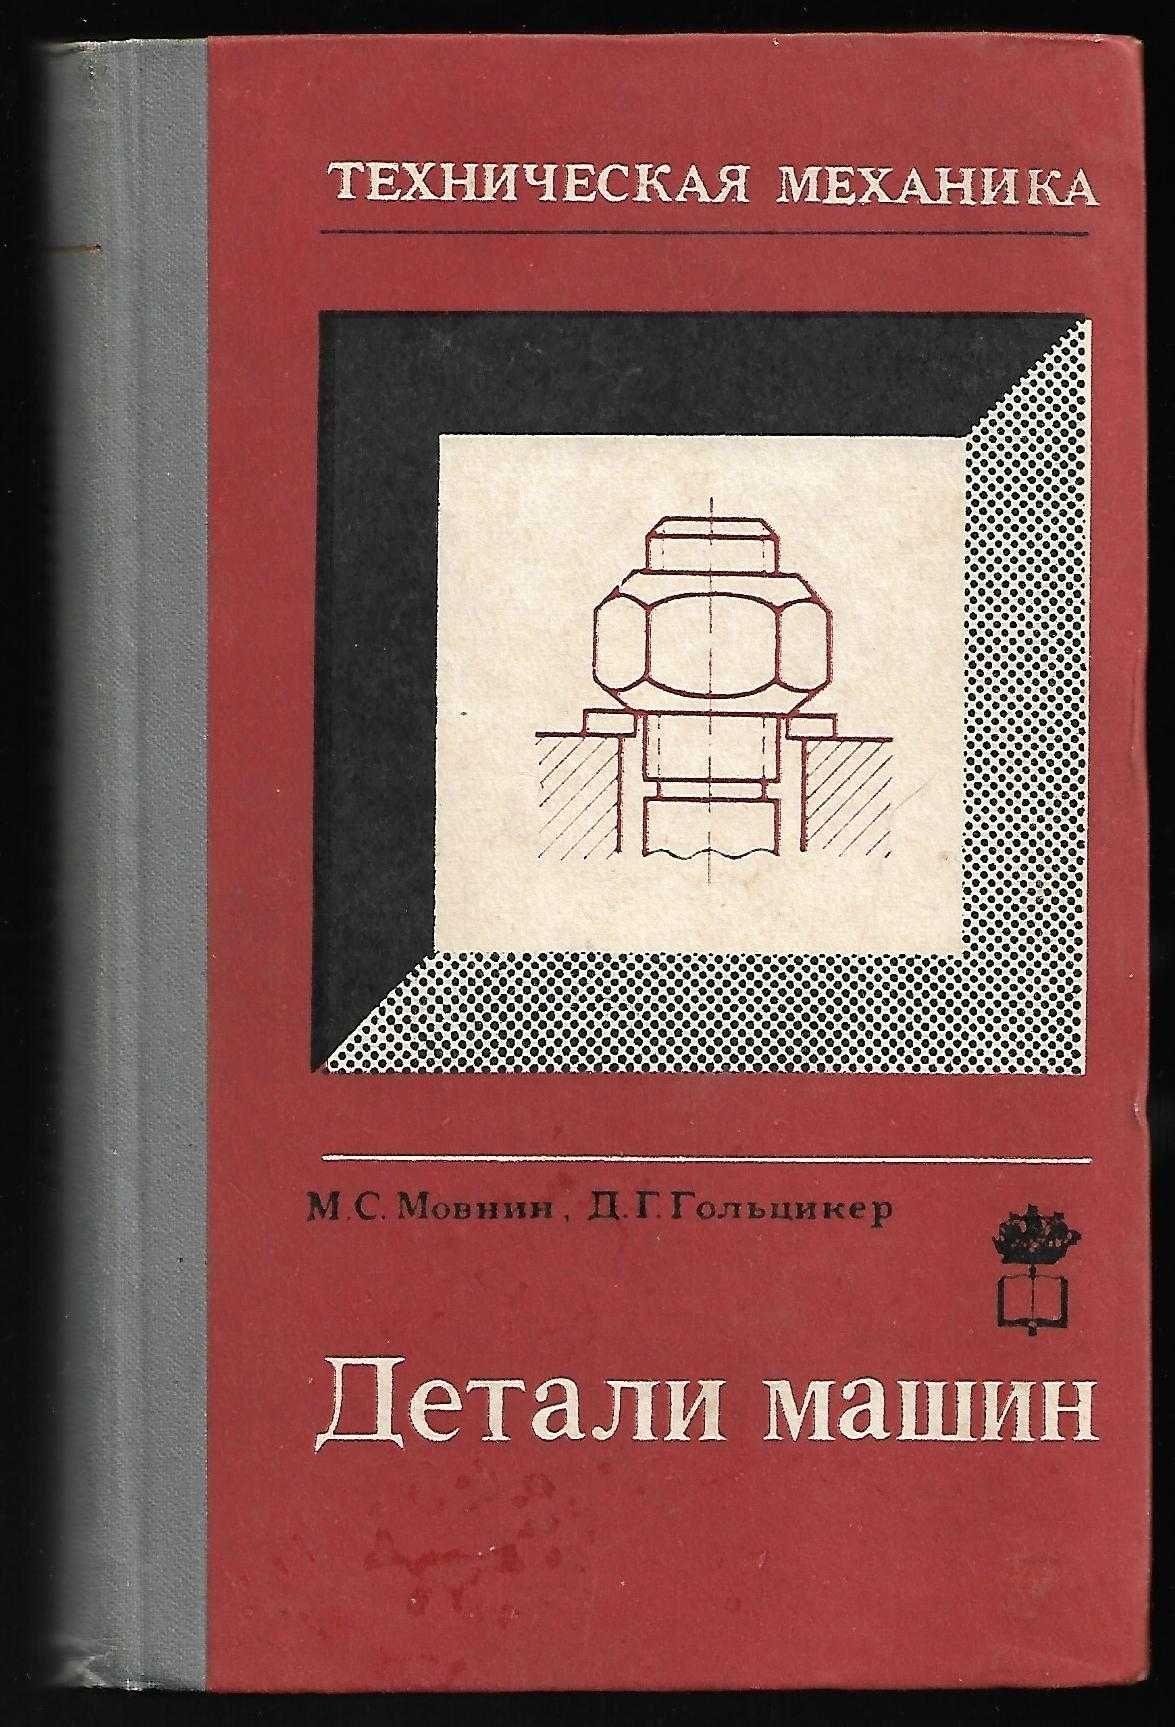 Книга "Детали машин" М.С.Мовнин, Д.Г.Гольцикер